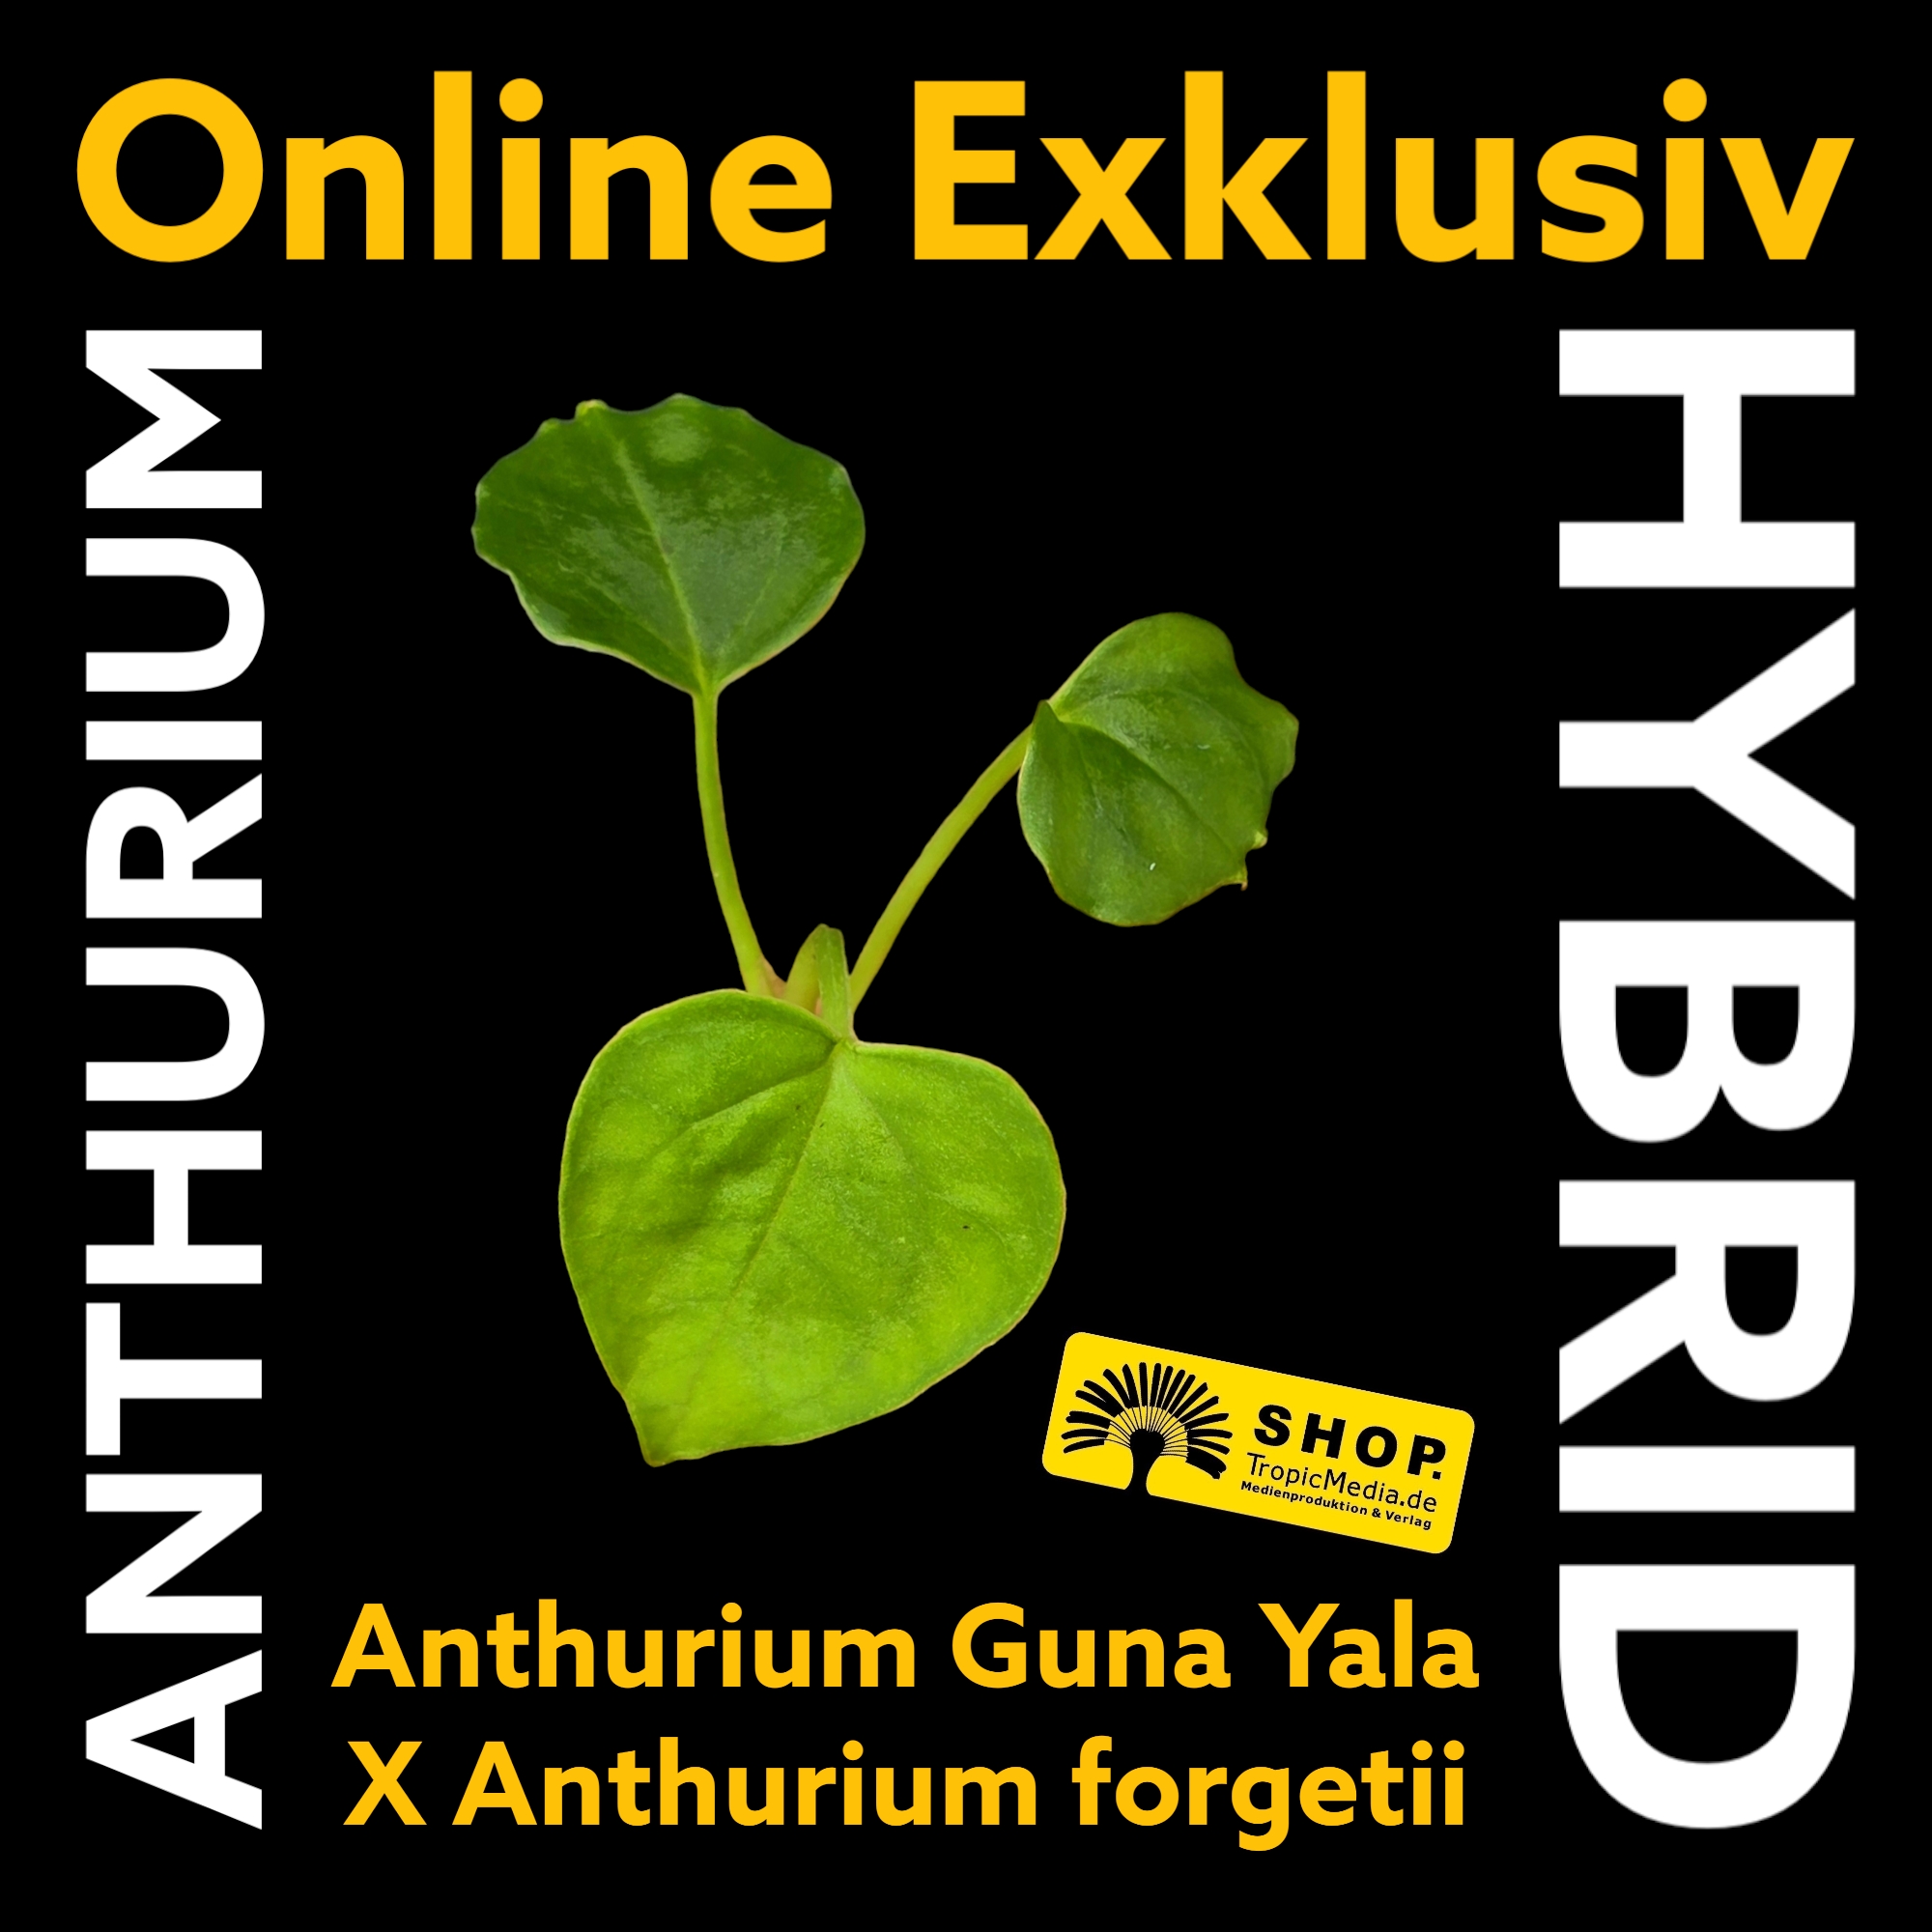 Anthurium Guna Yala X Anthurium forgetii EXQUISITE Kreuzung erstmals in Europa